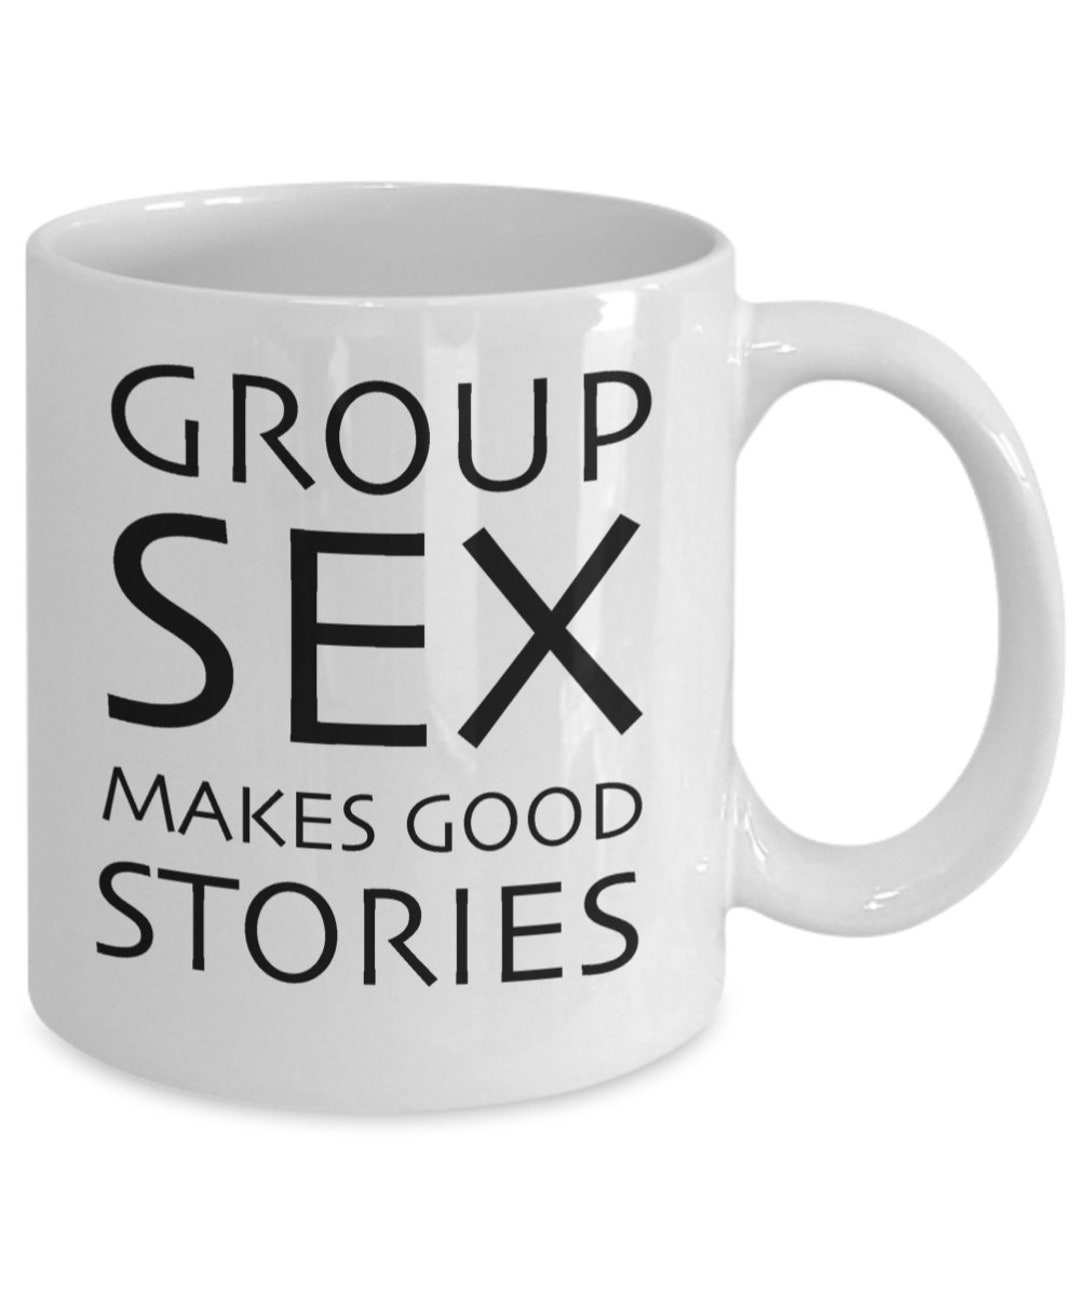 Group Sex Makes Good Stories / Swinger Mug / Funny Sex Gift